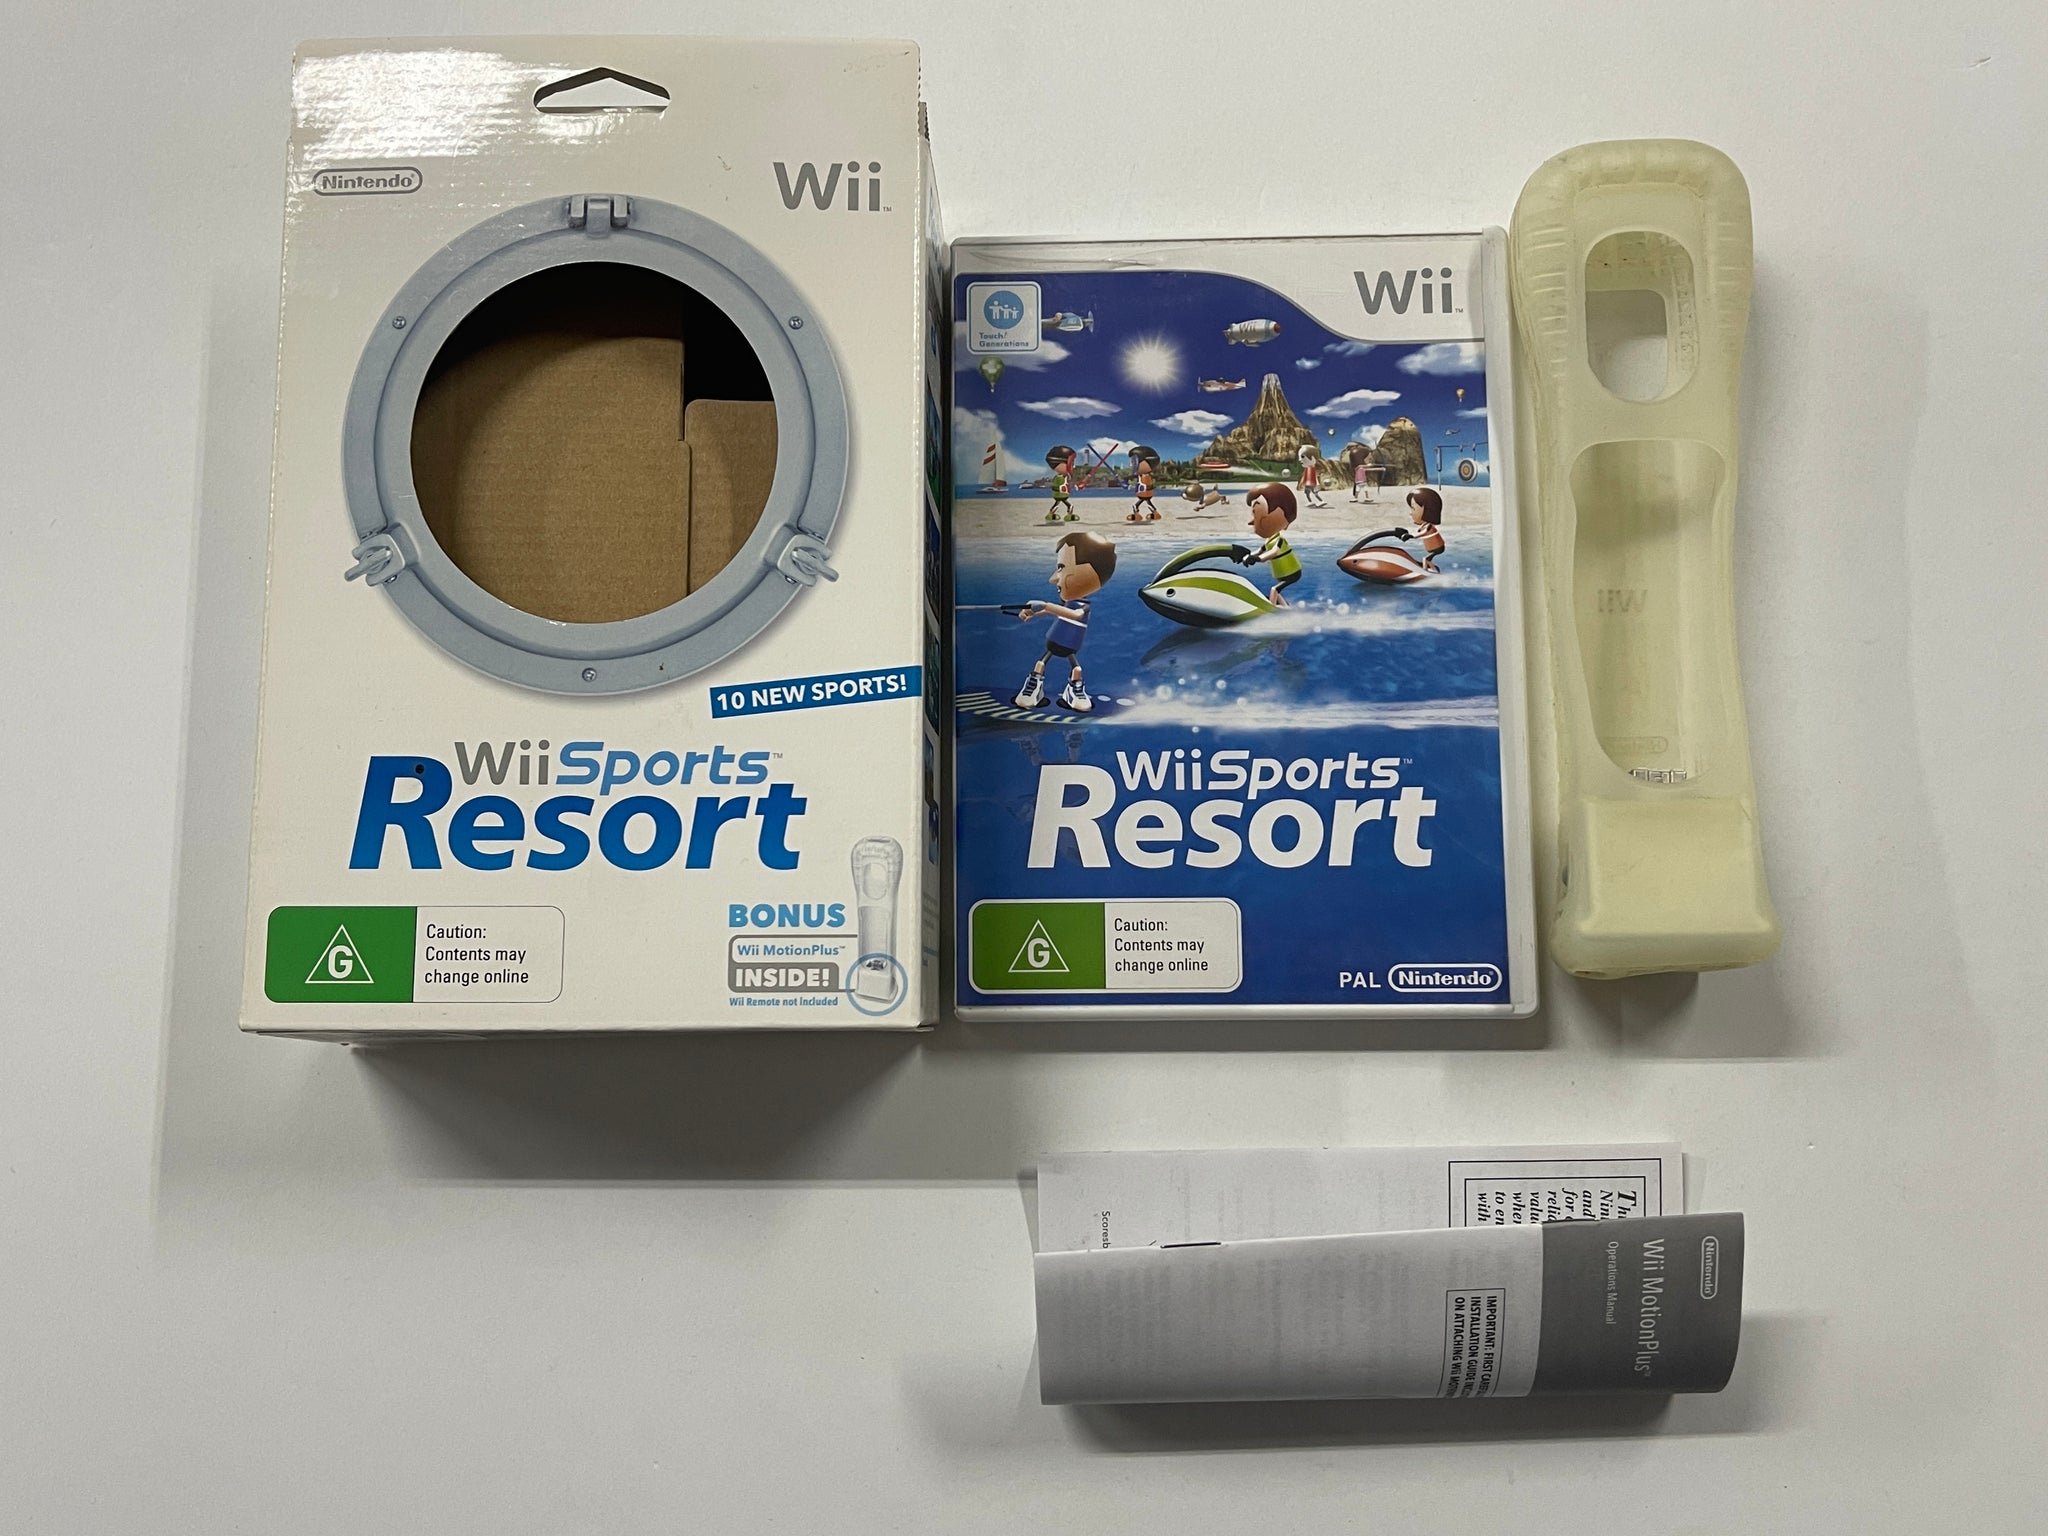 Nintendo Bundles Wii Sports Resort, MotionPlus With Wii